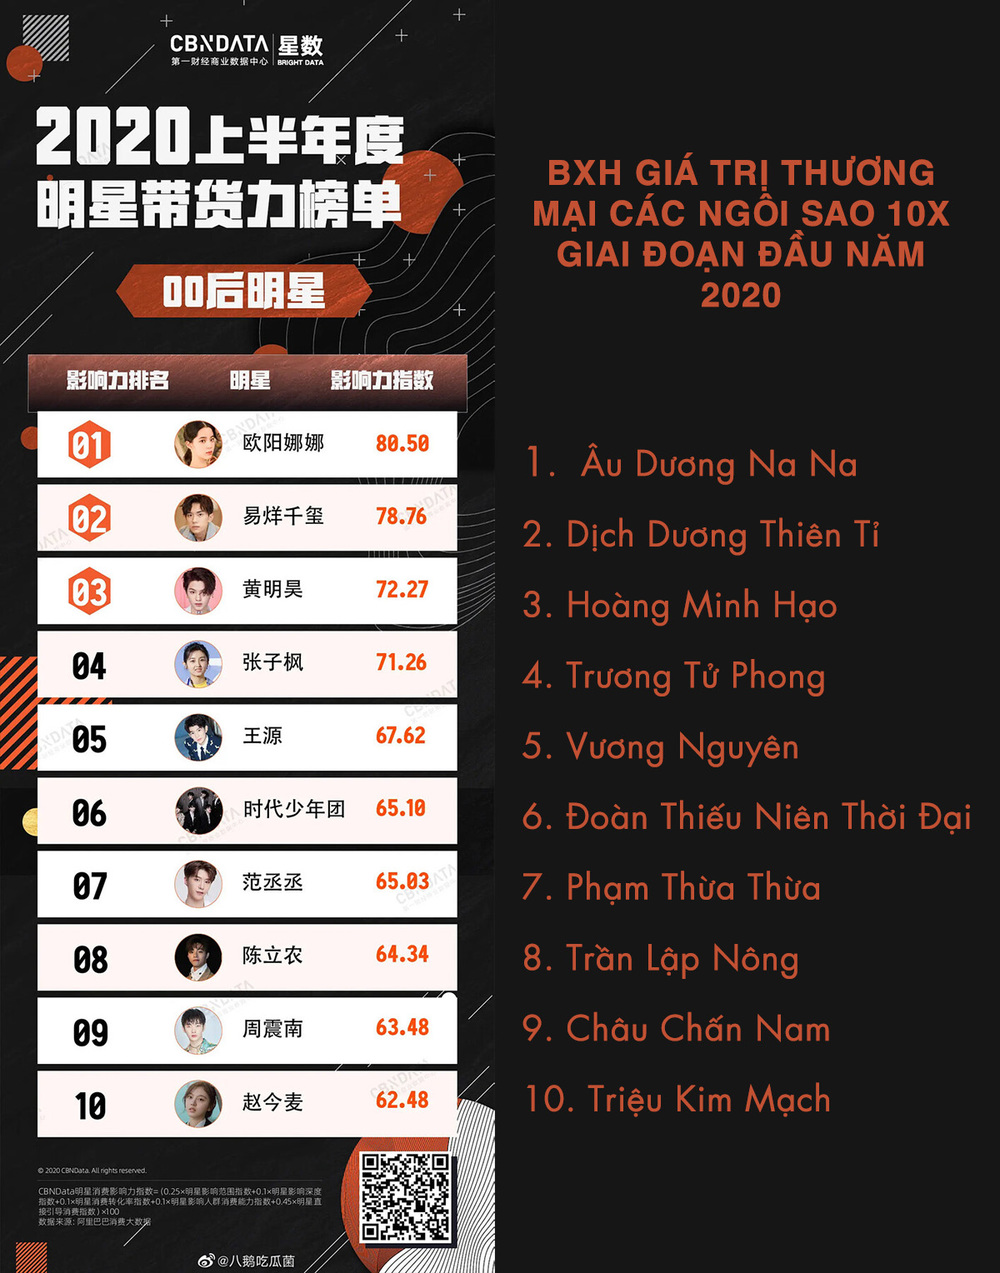  
Bảng xếp hạng giá trị thương mại được công bố (Ảnh Weibo)